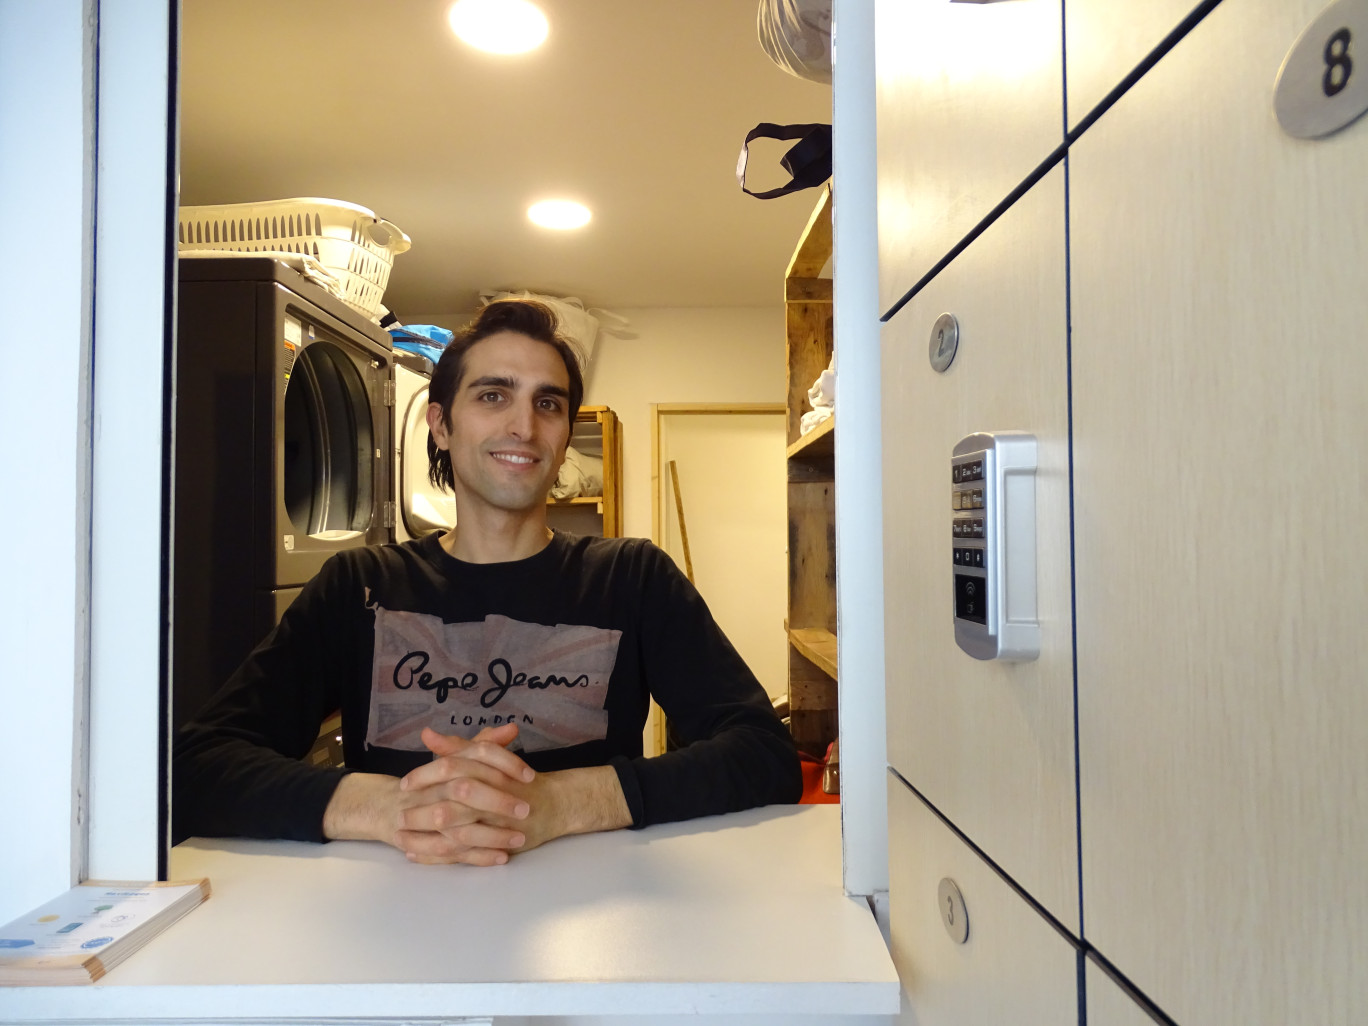 Du lavage au repassage, Cédric Impelletieri offre une gamme de services de laverie nouvelle génération, connectée et écologique. (Aletheia Press / Nadège Hubert)